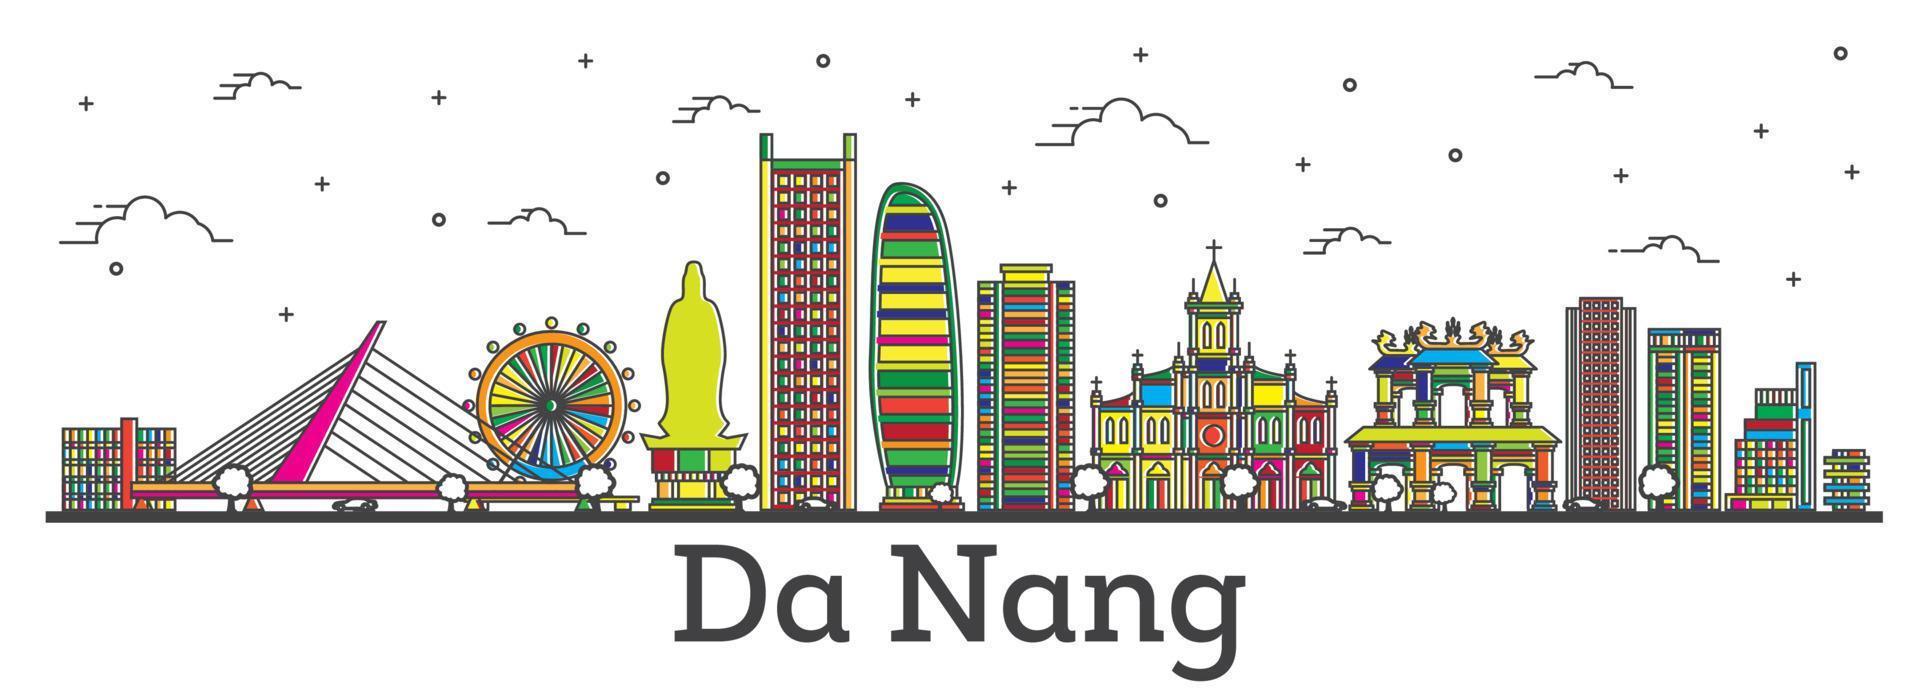 delineie o horizonte da cidade da nang vietnam com edifícios coloridos isolados em branco. vetor